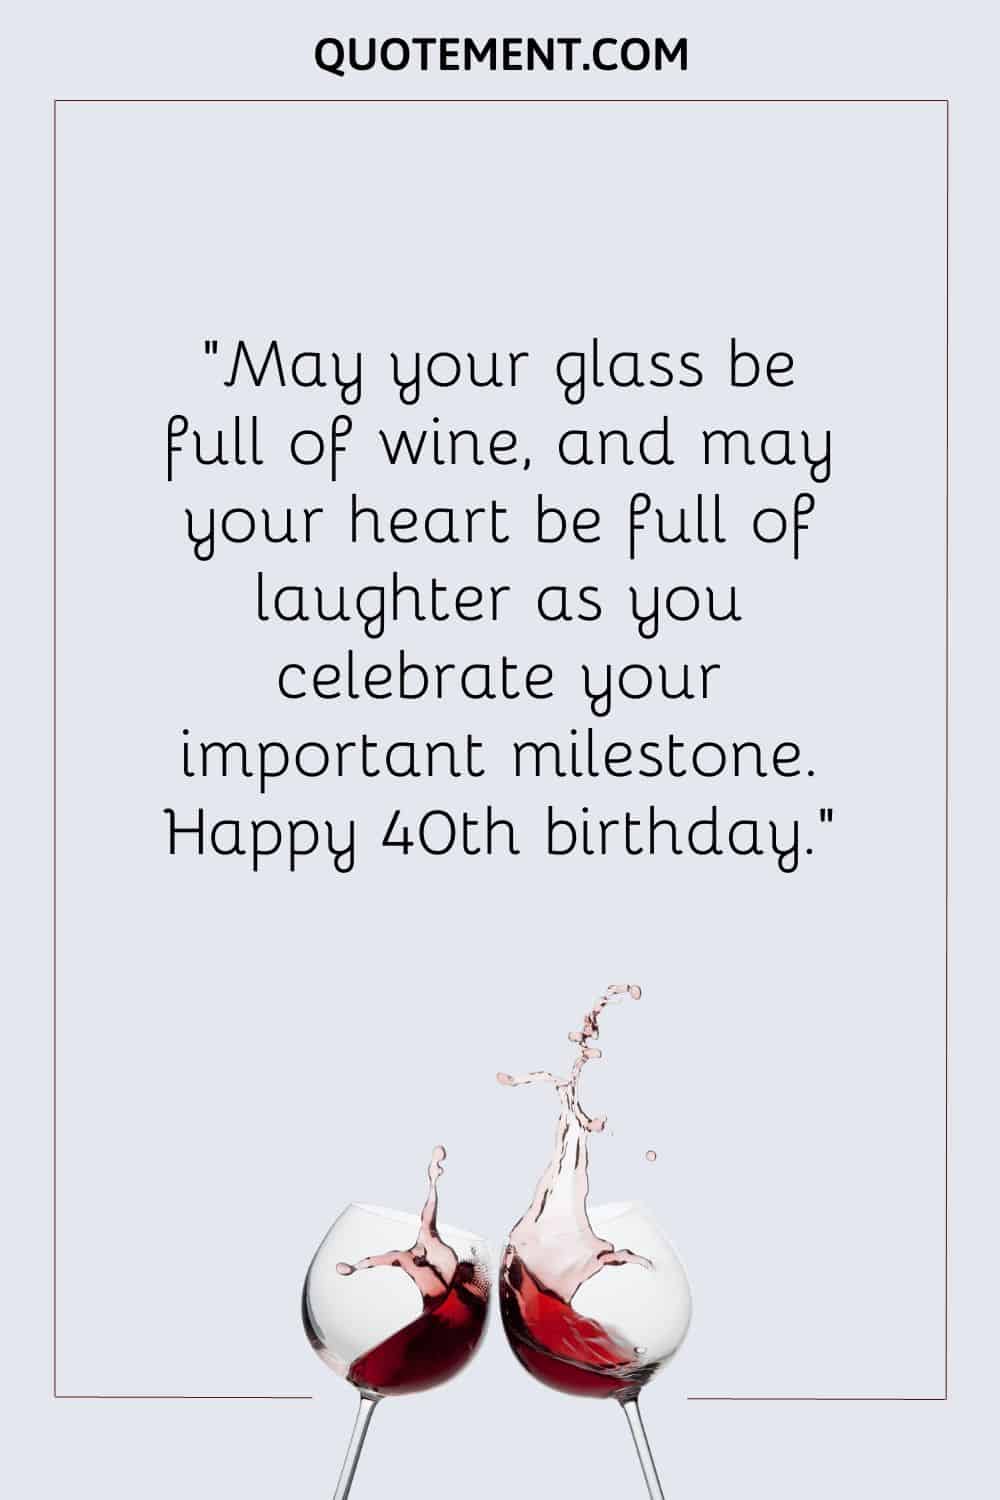 Que tu copa esté llena de vino y que tu corazón esté lleno de risas mientras celebras este importante hito.